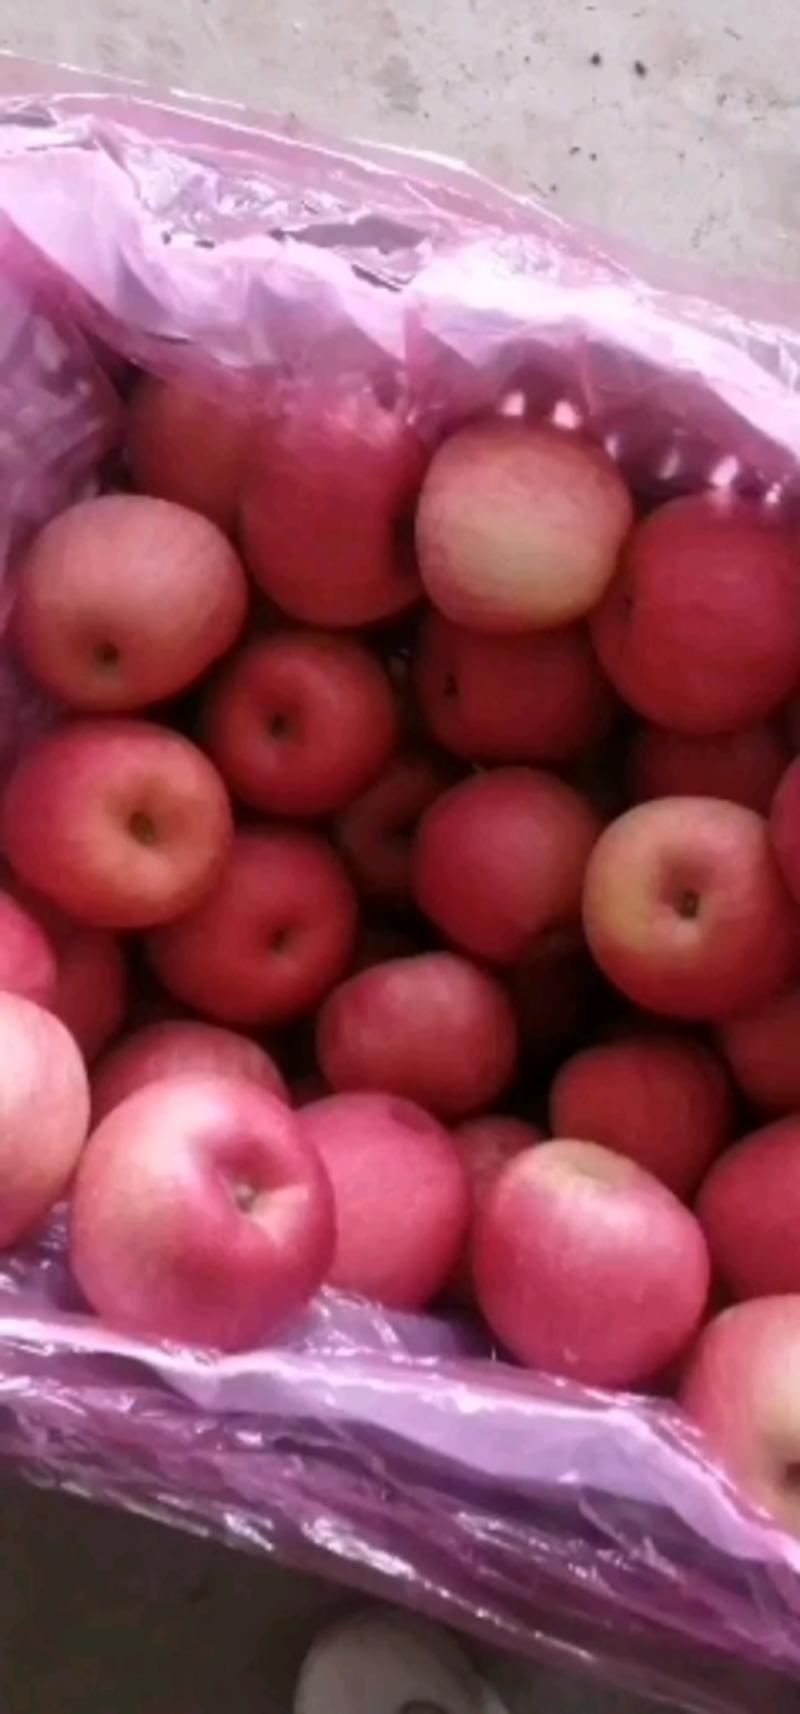 苹果寒富国光富士黄元帅各种水果大量上市中欢迎新老客户前来